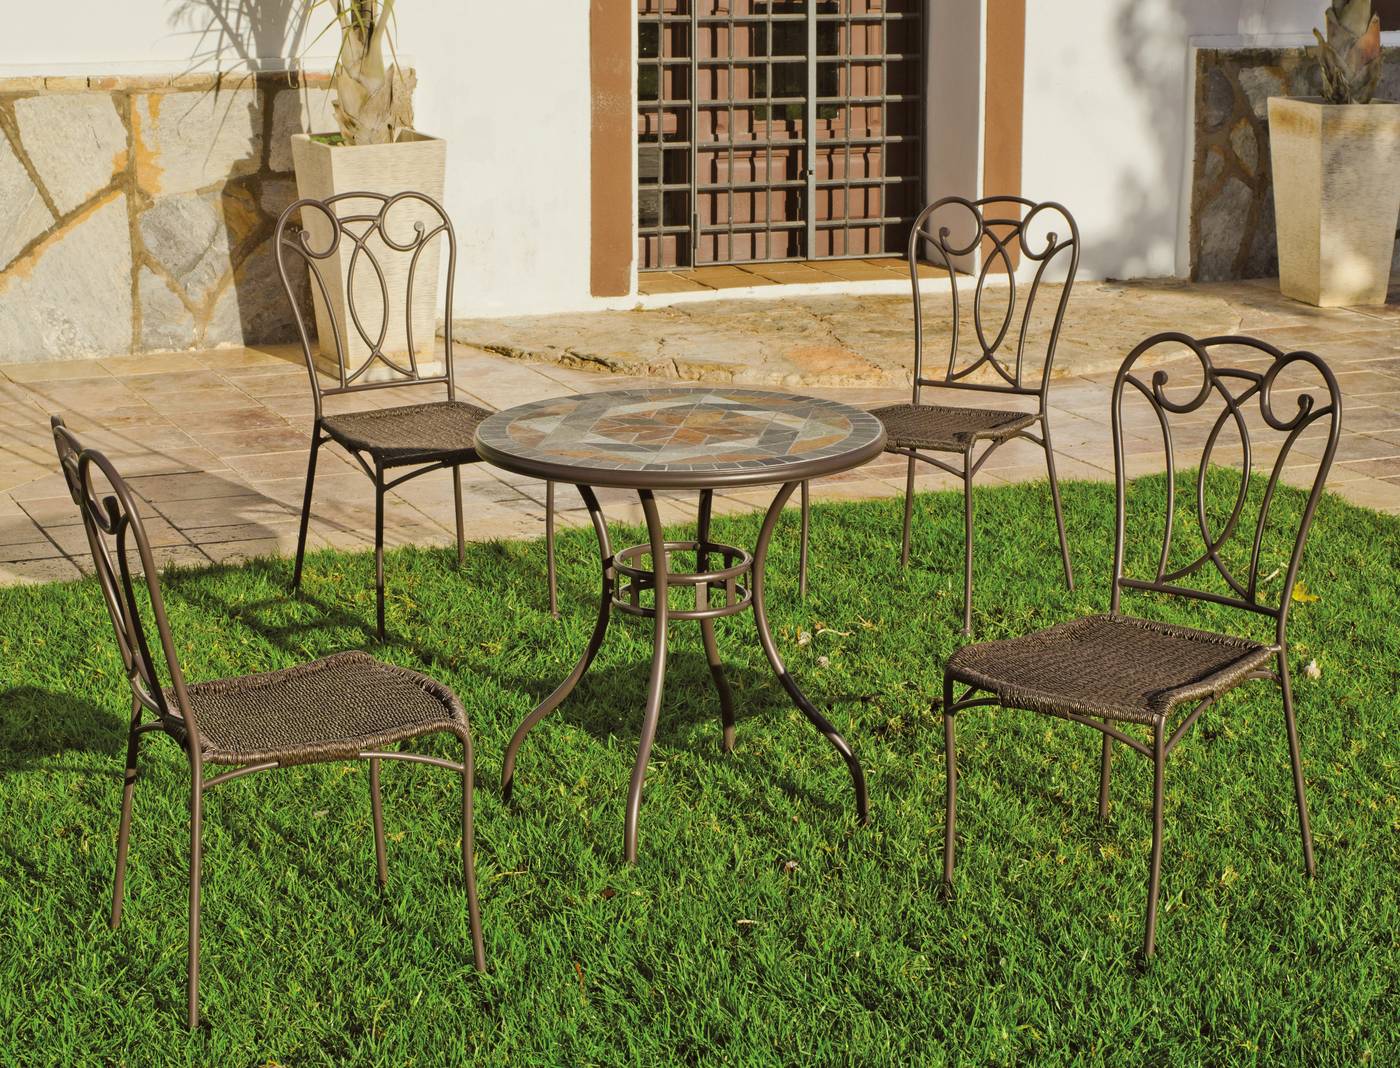 Silla Forja Adria - Silla apilable de forja color bronce, con asiento de ratán sintético